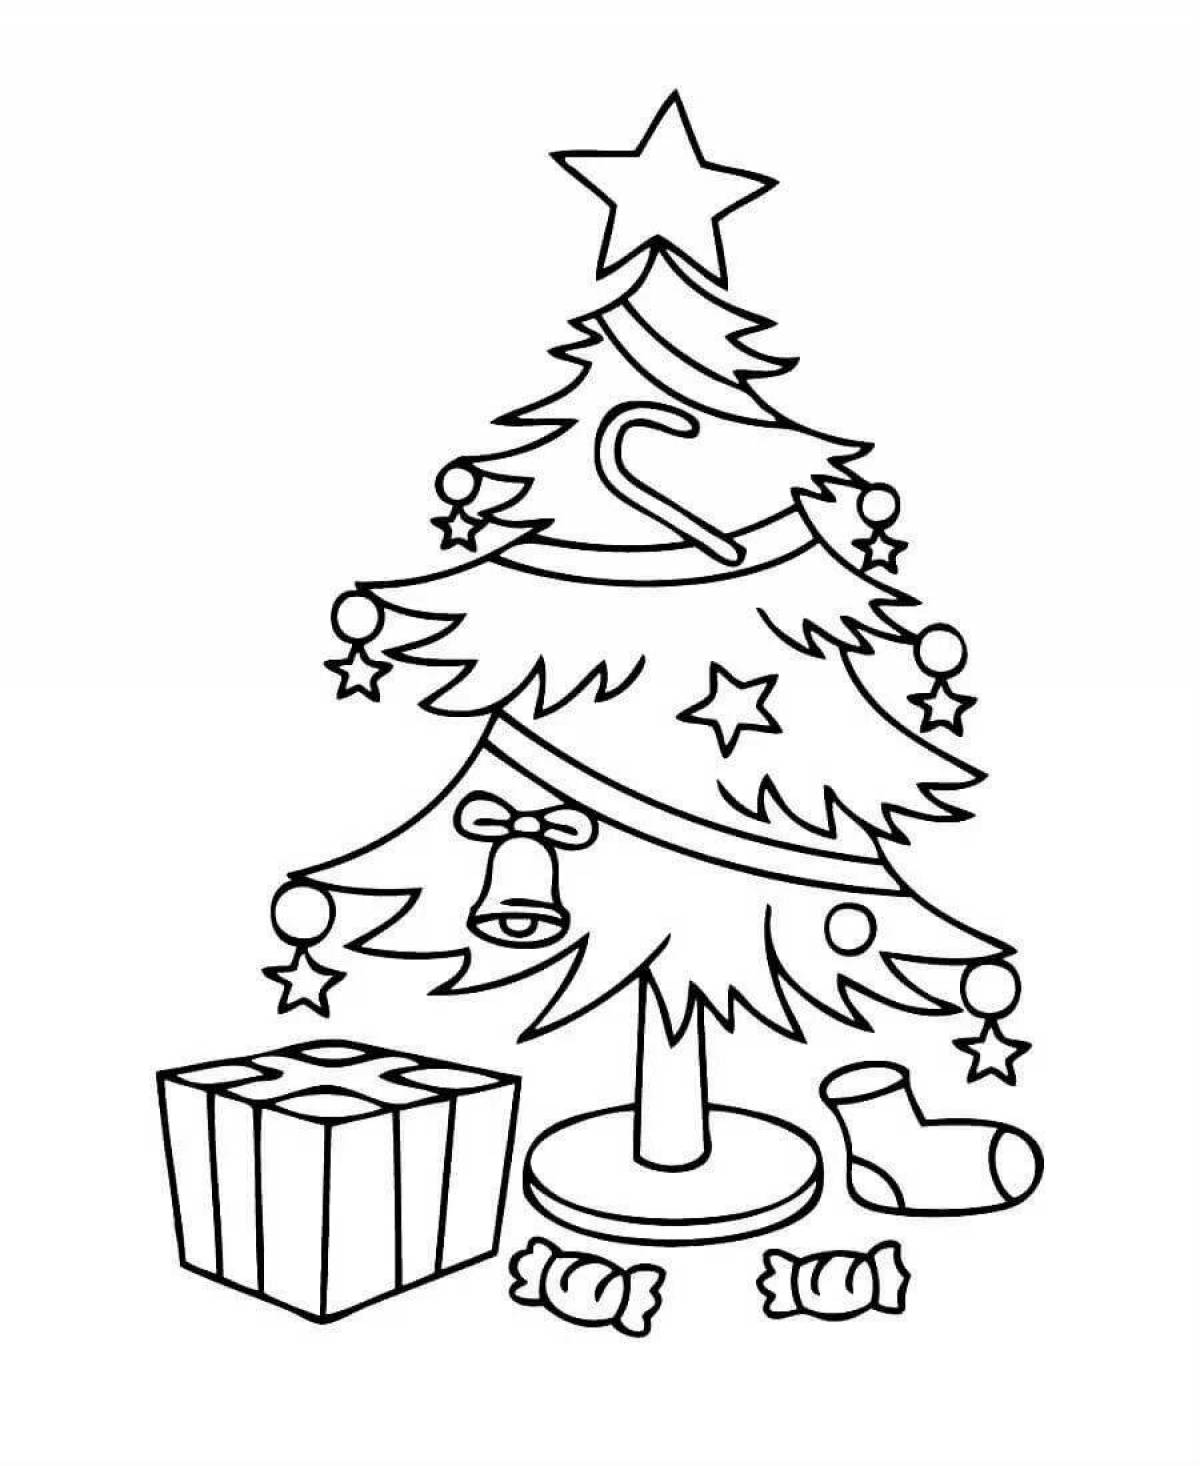 Гламурный рисунок рождественской елки